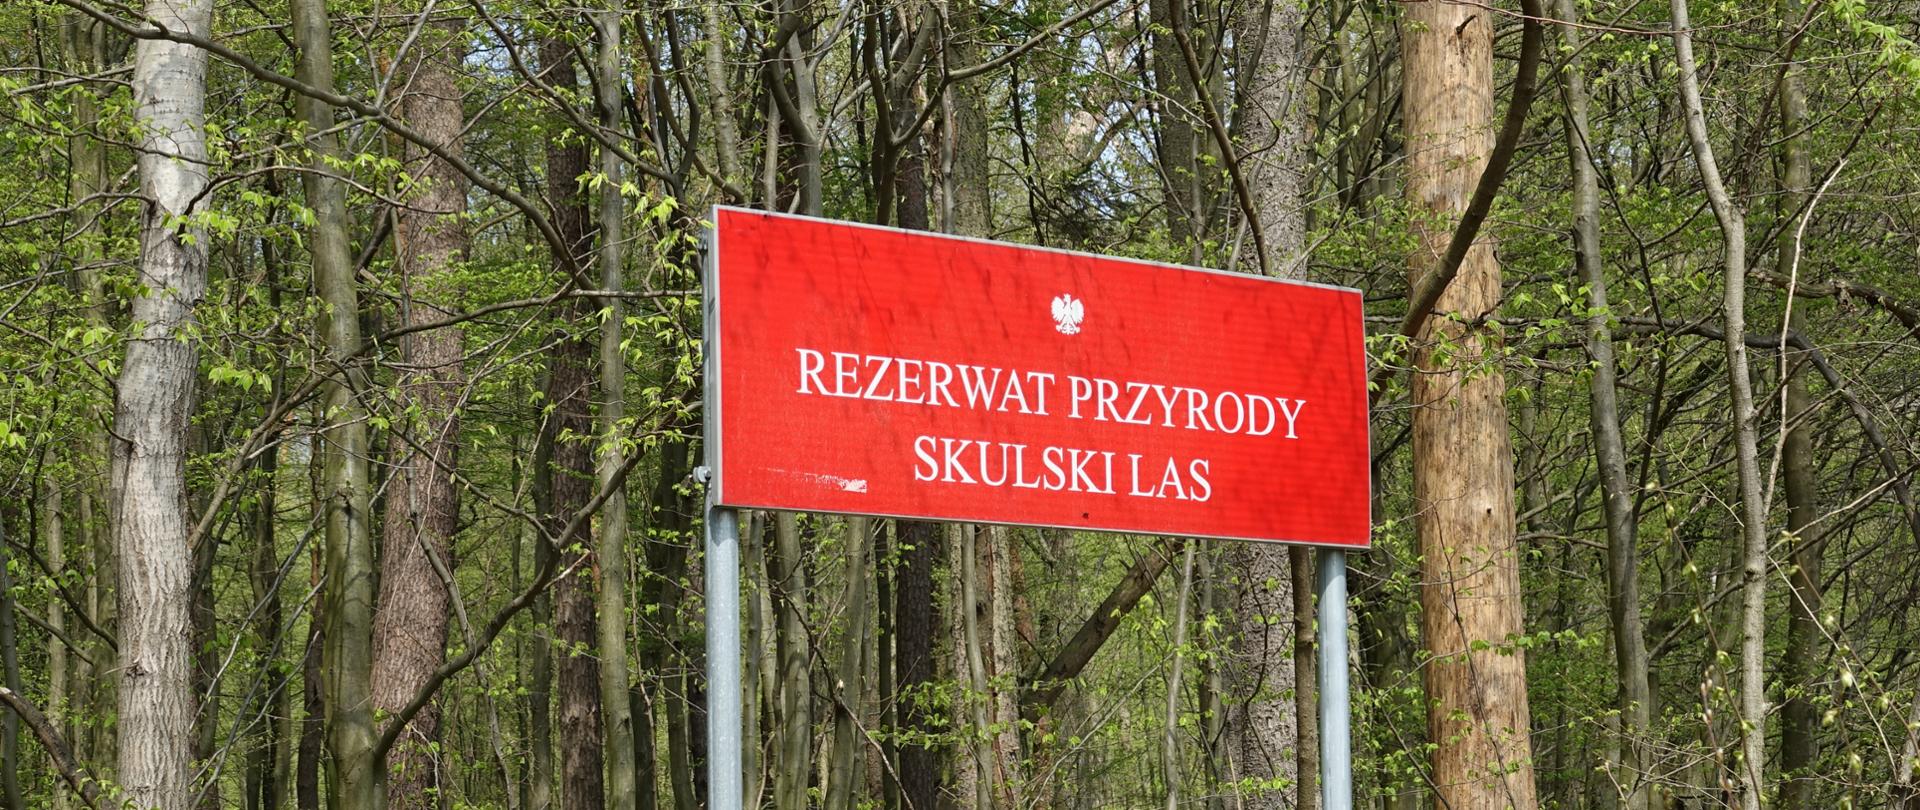 Czerwona tablica urzędowa z tekstem "Rezerwat przyrody Skulski Las" - za nią drzewostan wiosennego lasu